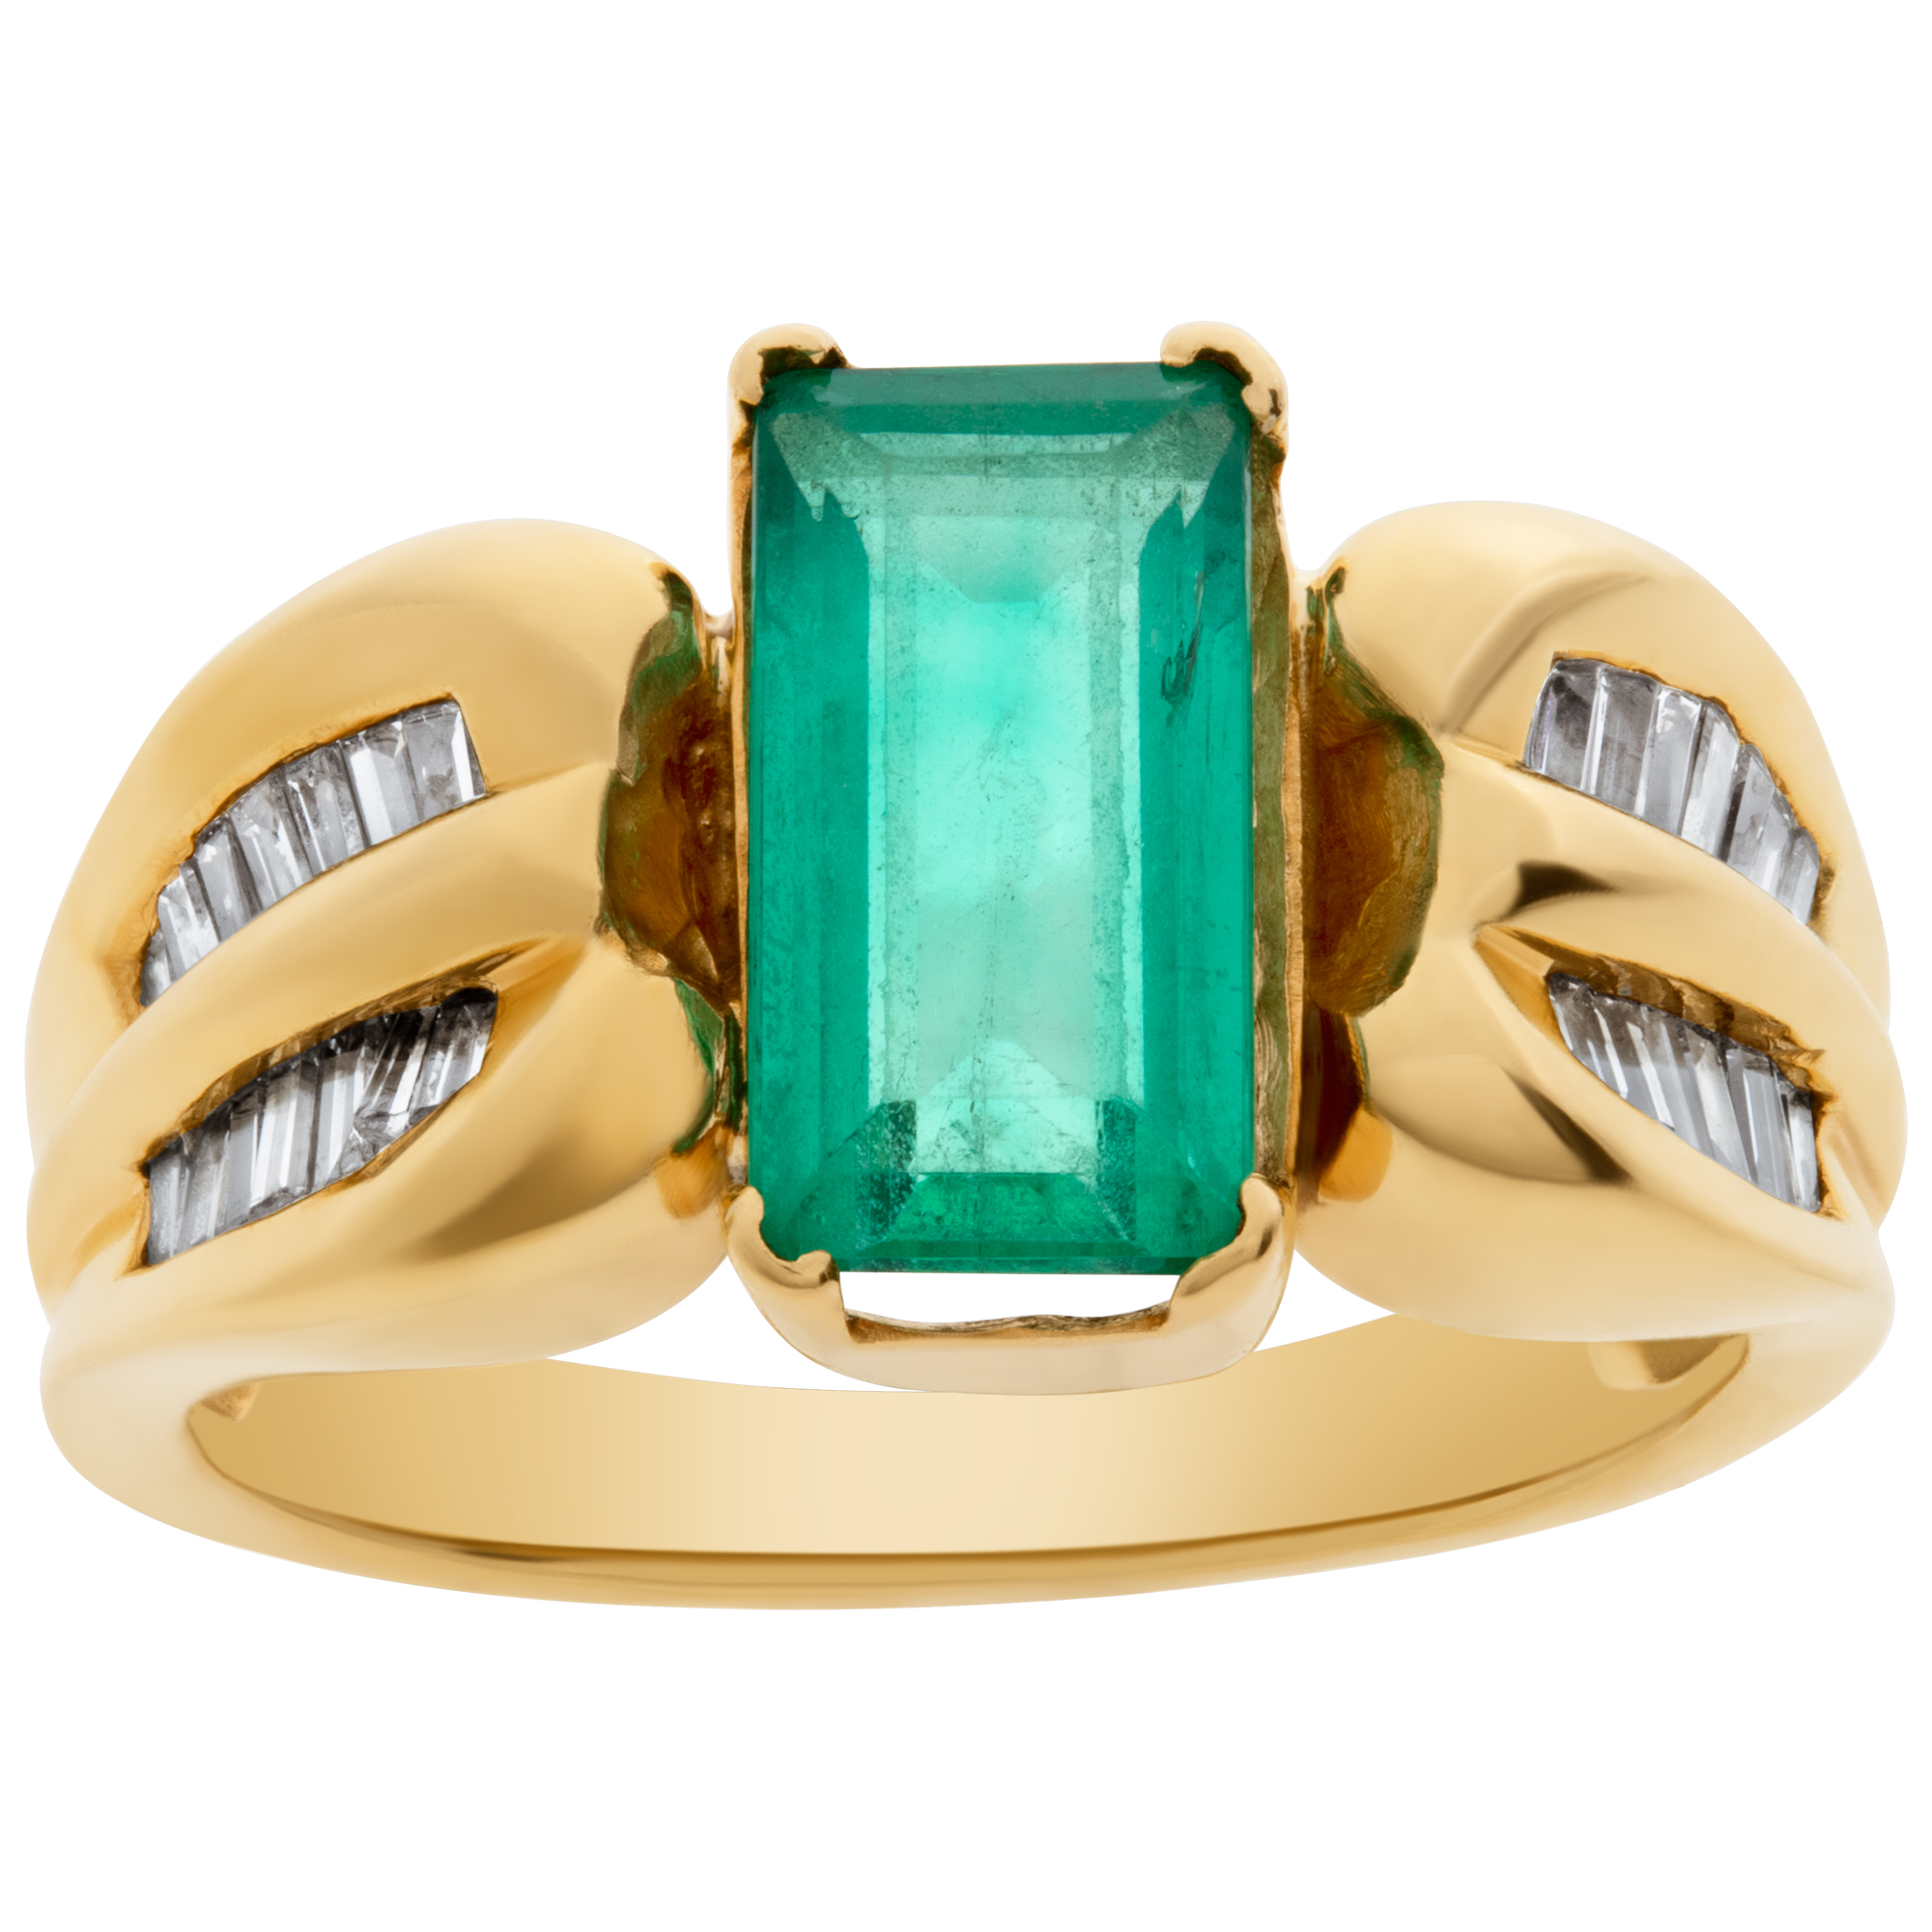 Emerald ring in 18k